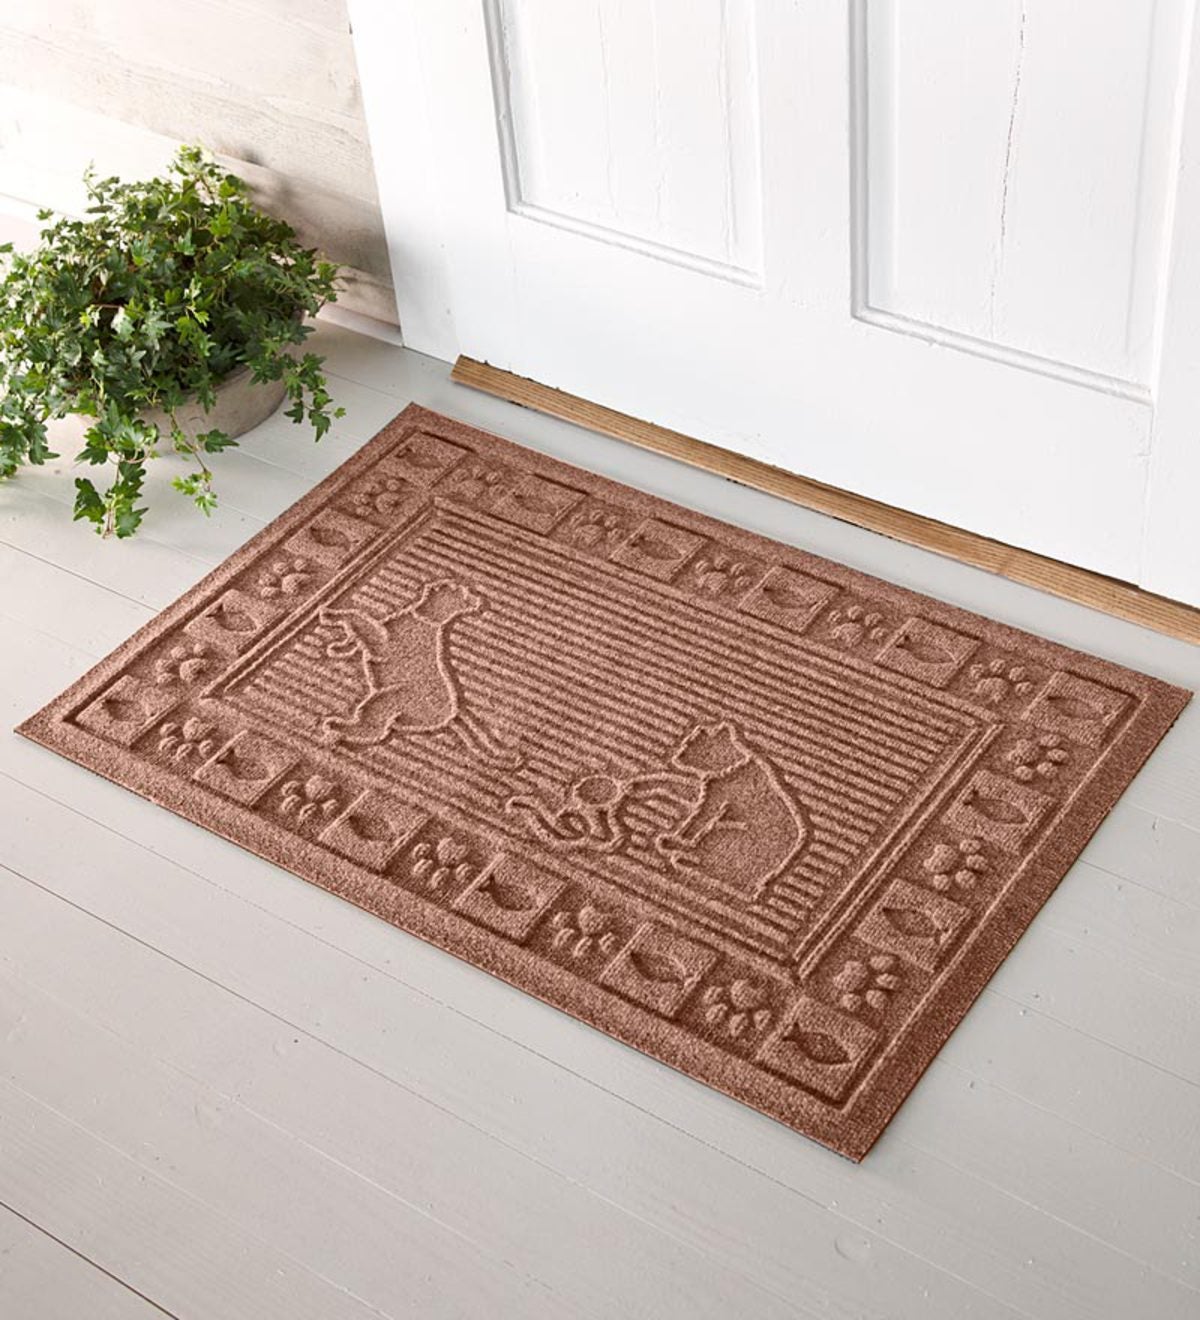 Waterhog Doormats In Cat Design - Medium Brown